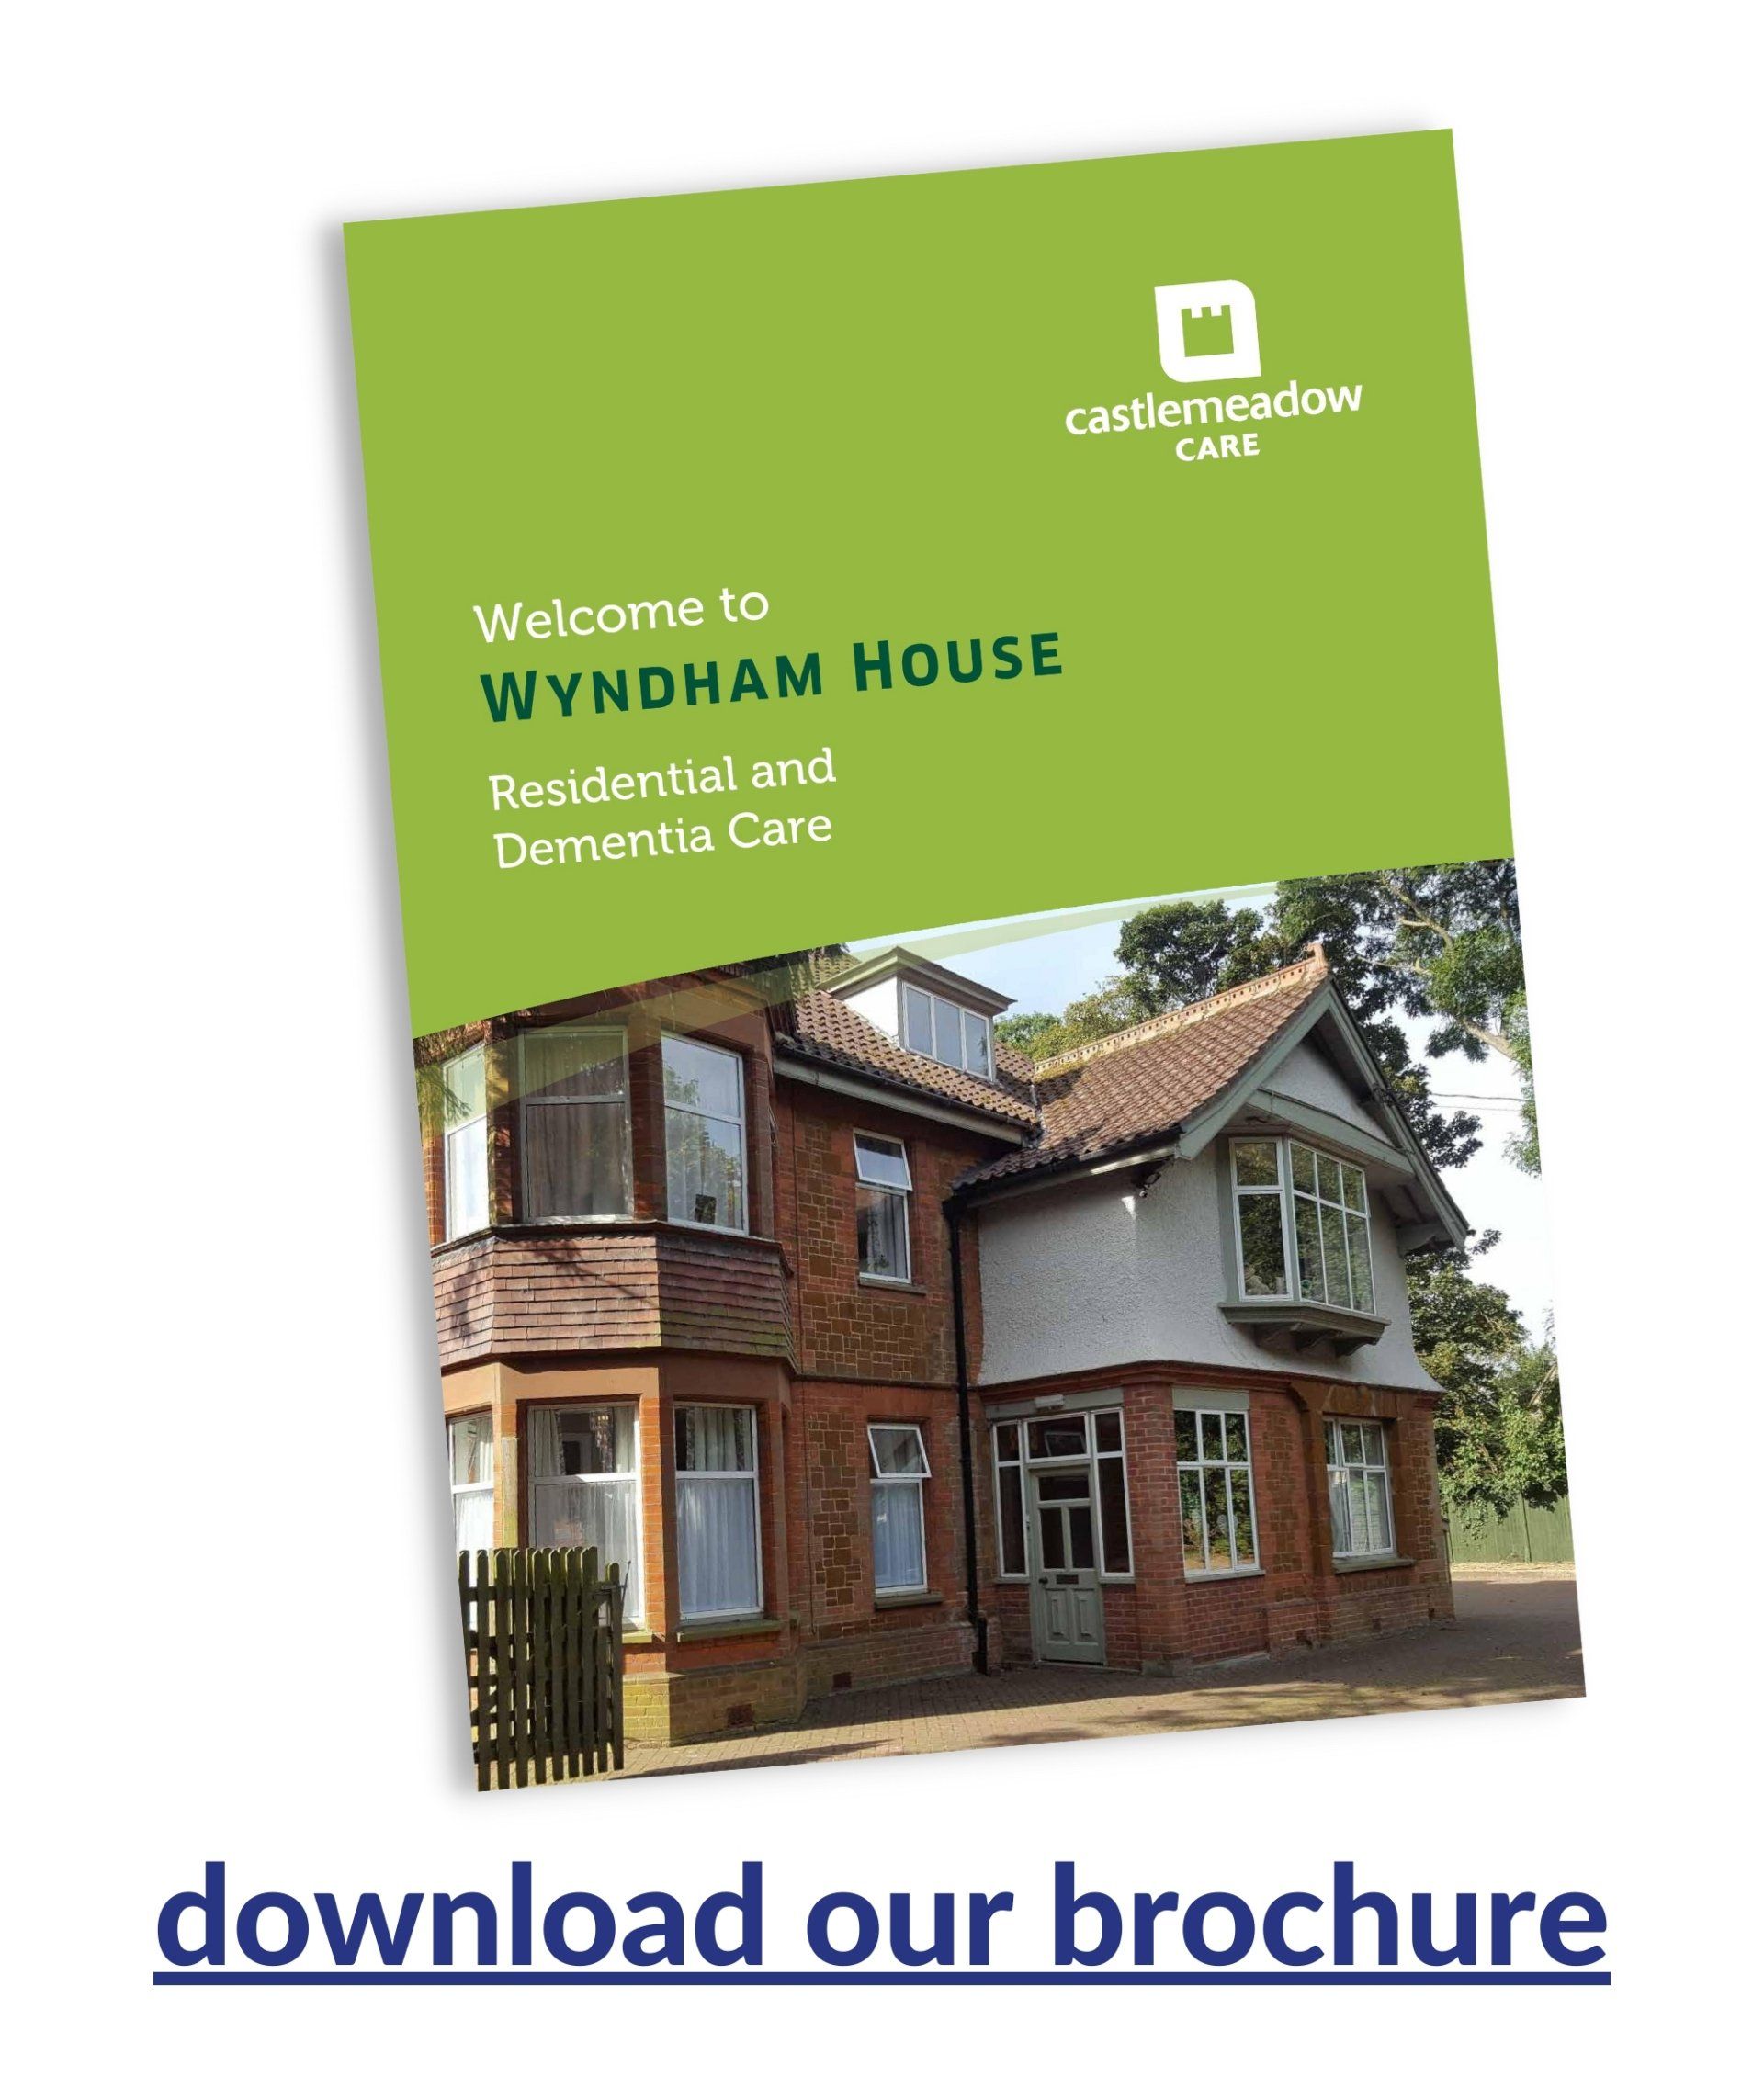 Wyndham house